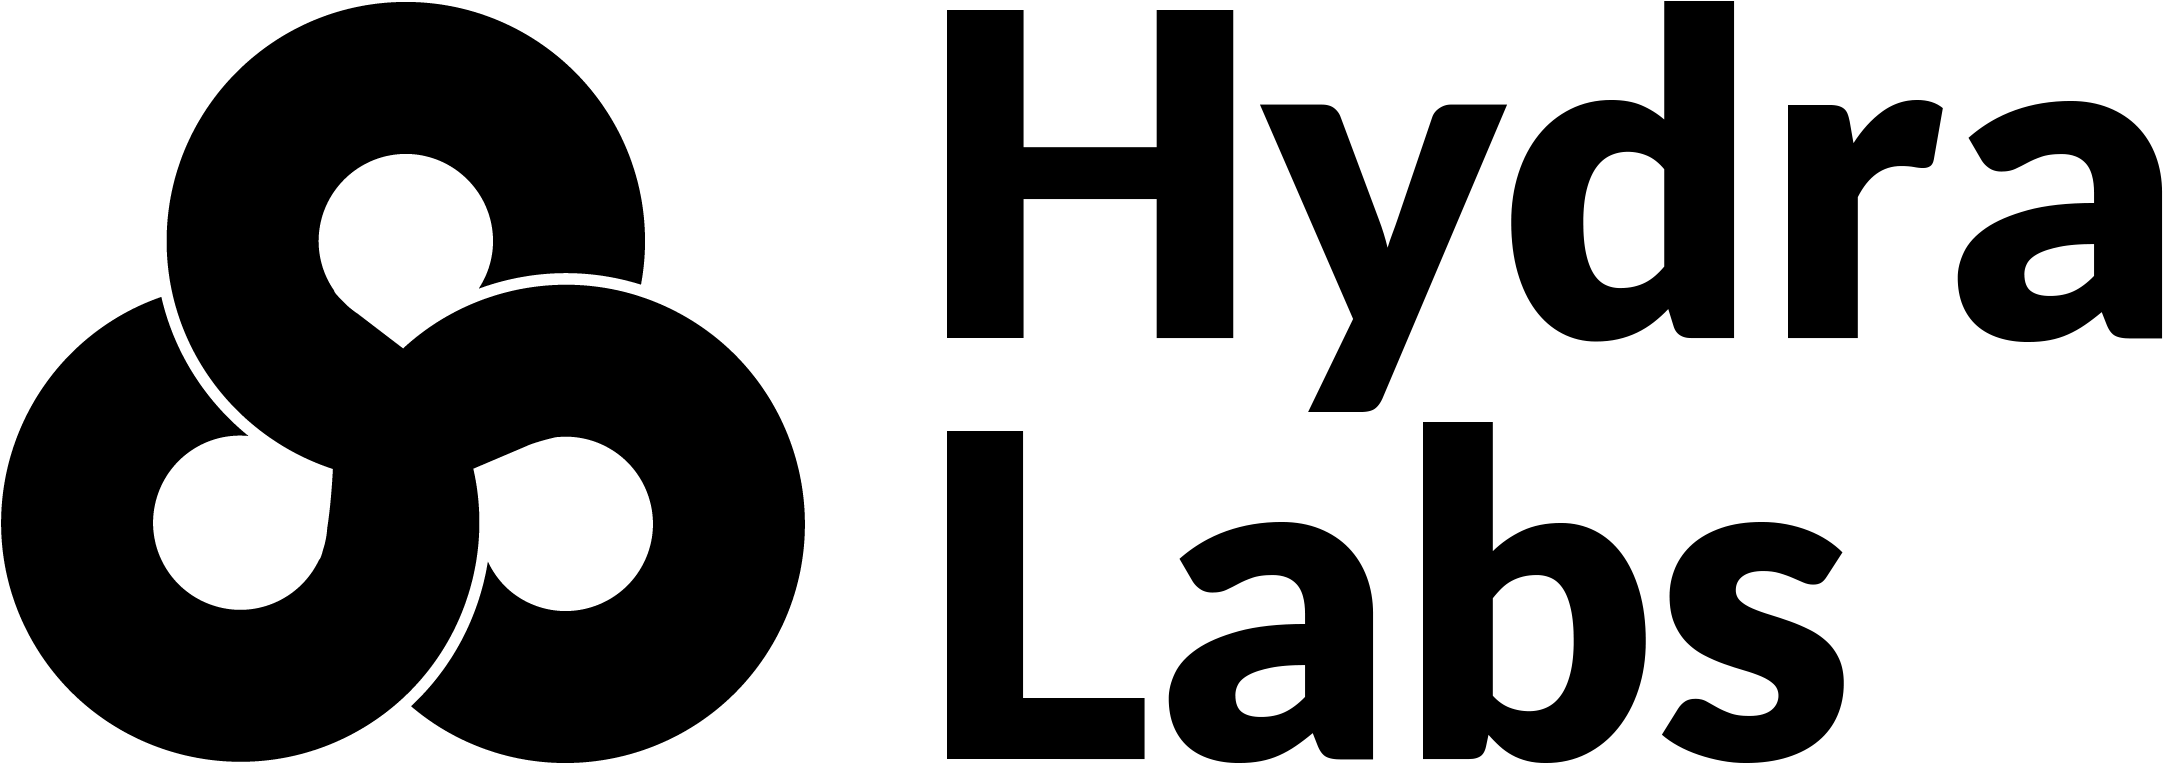 Marvel Hyra logo PNG Image de haute qualité